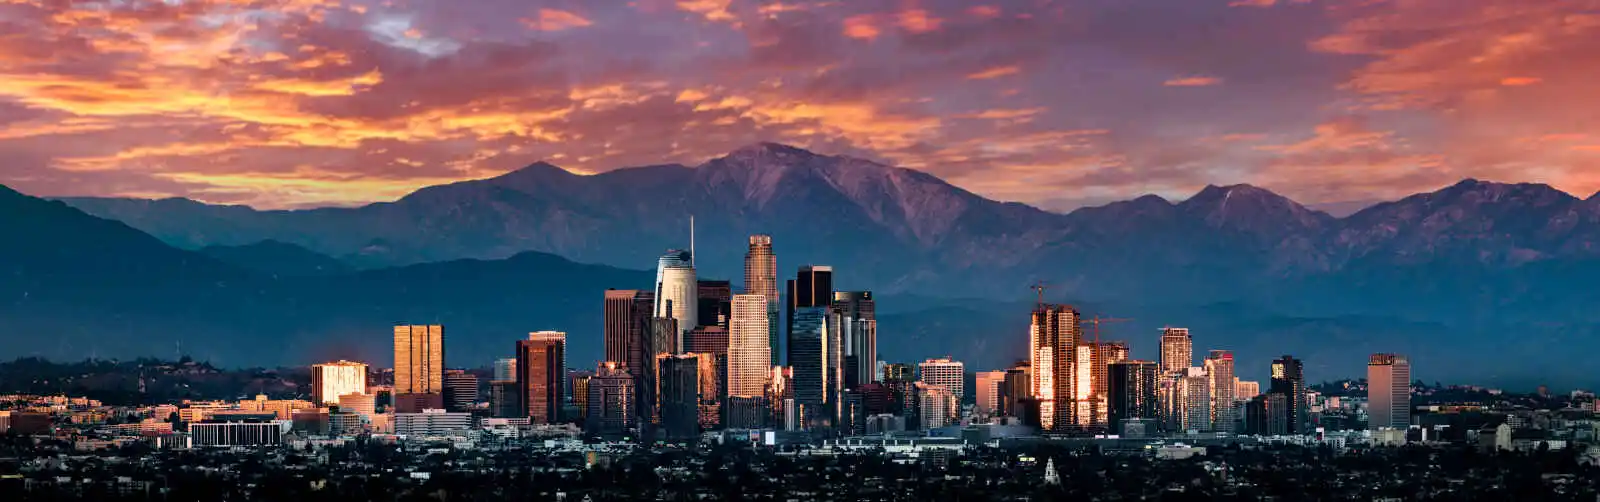 Coucher de soleil sur la skyline de Los Angeles, États-Unis